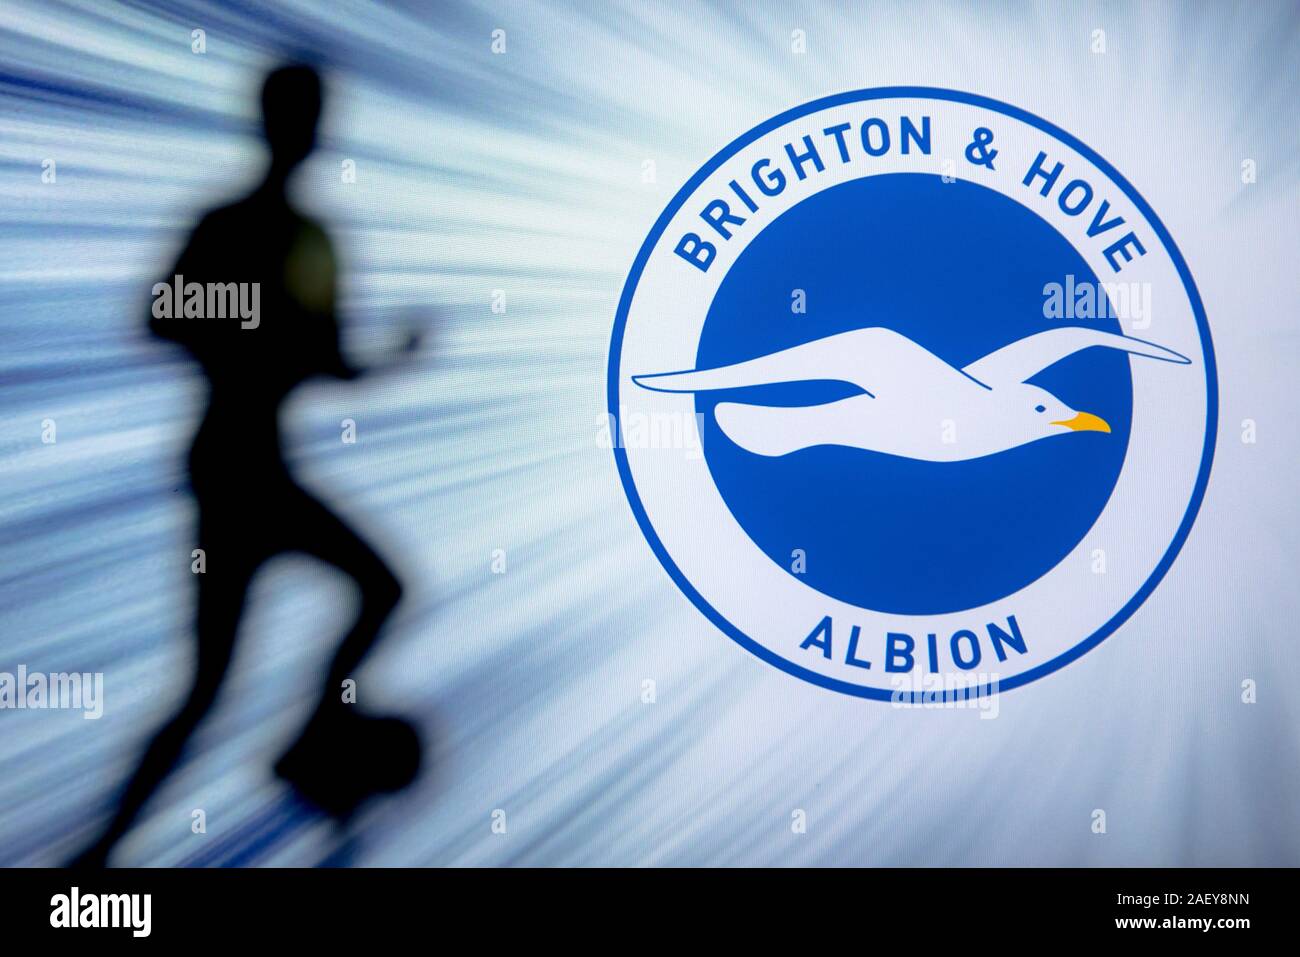 BRIGHTON, Inglaterra, en julio. 1. 2019: Brighton Hove Albion Football Club logo, Premier League, Inglaterra. La silueta del jugador de fútbol. Foto de stock